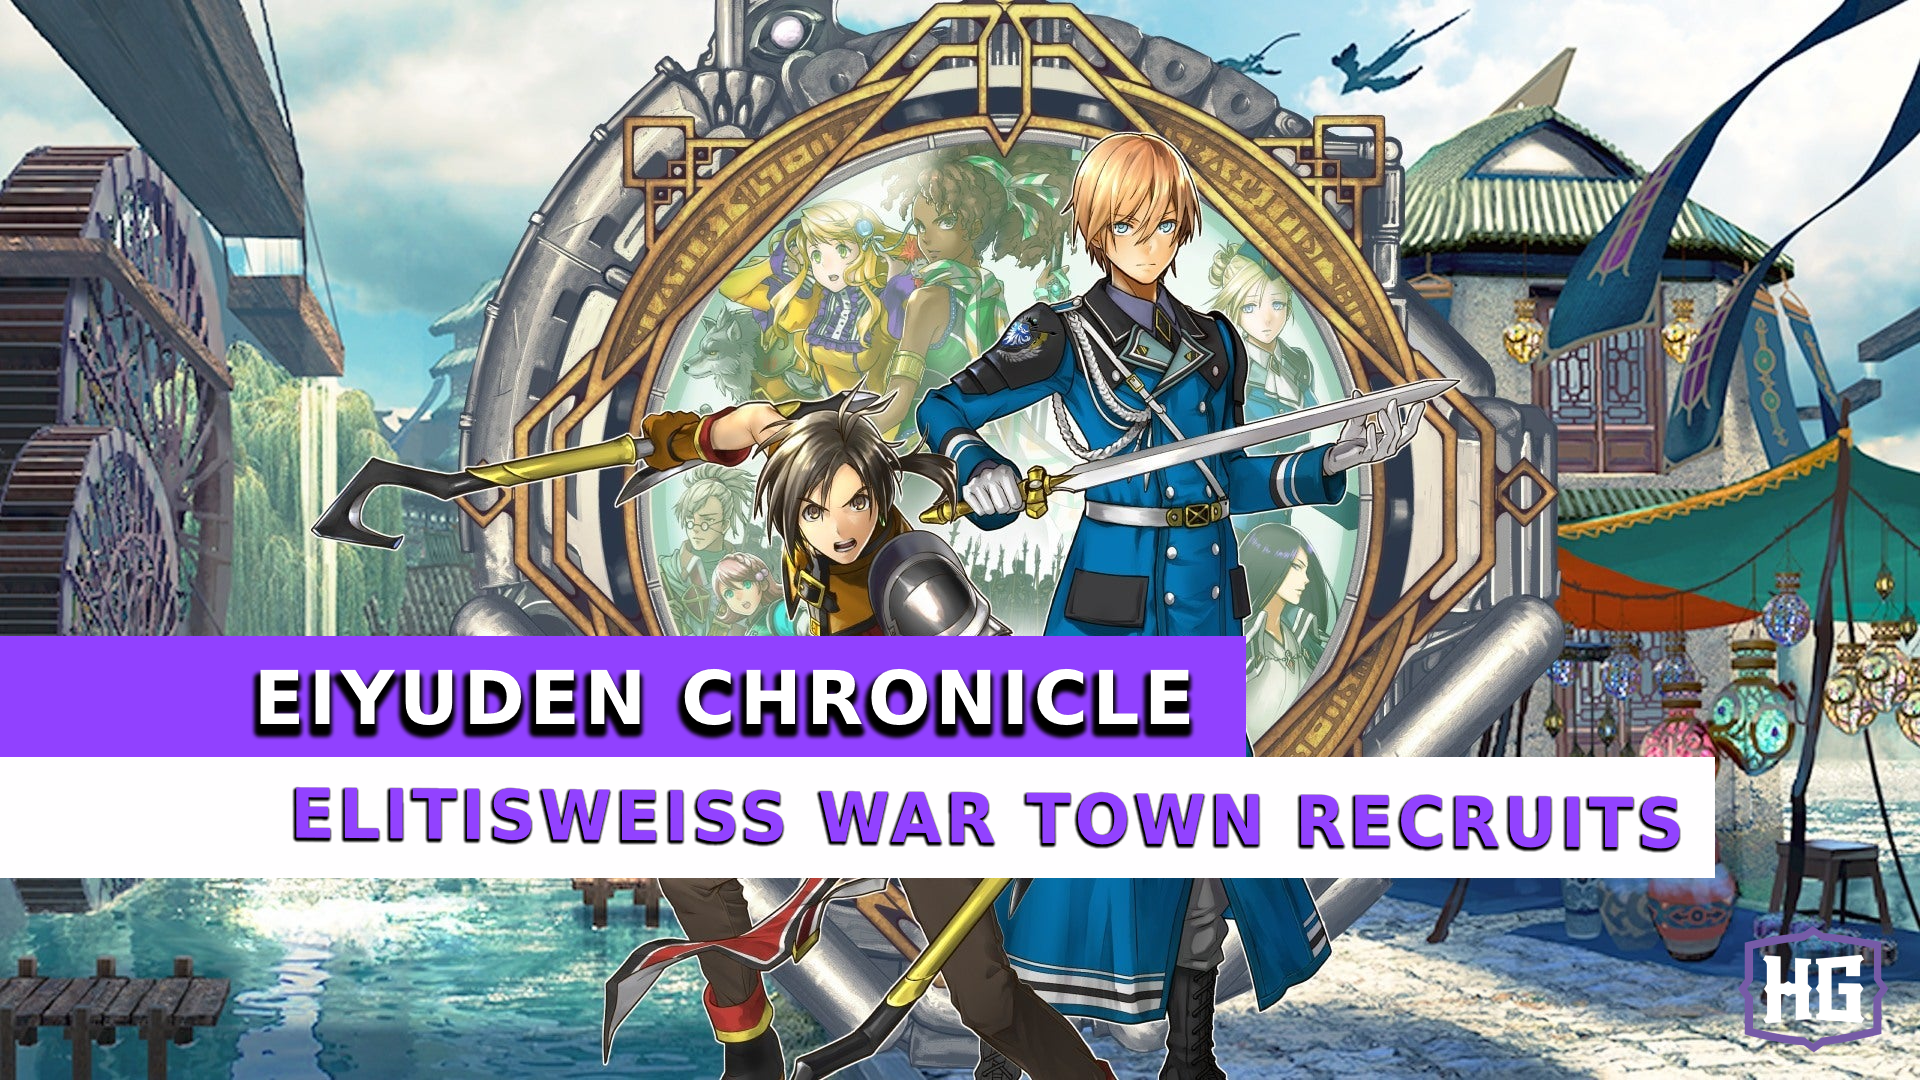 Eiyuden Chronicle Eltisweiss War Town Recruits